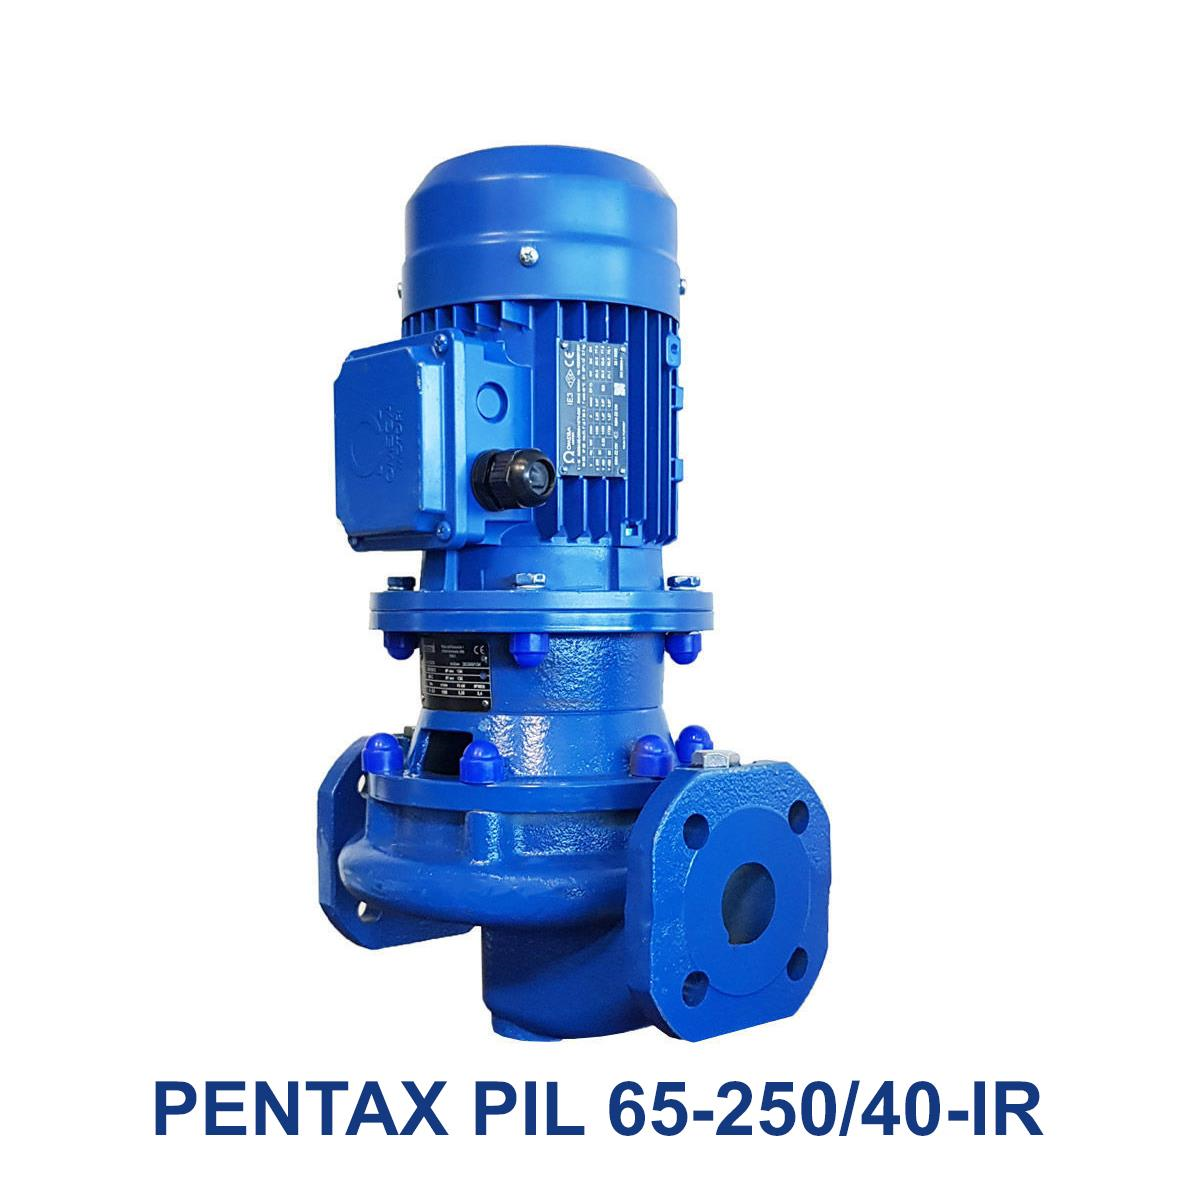 PENTAX-PIL-65-250-40-IR